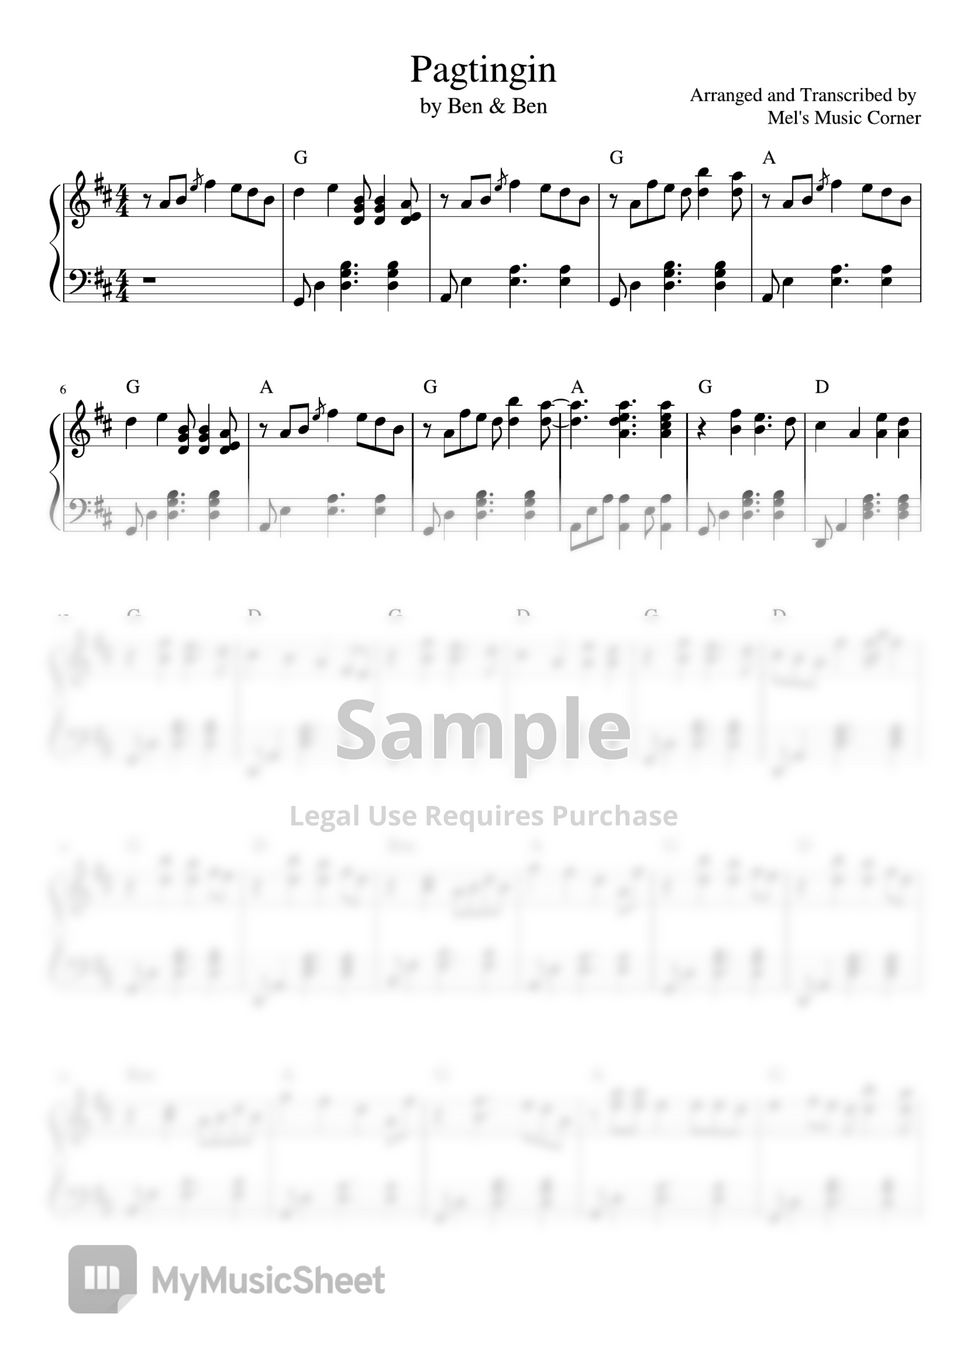 Ben&Ben - Pagtingin (piano sheet music) by Mel's Music Corner